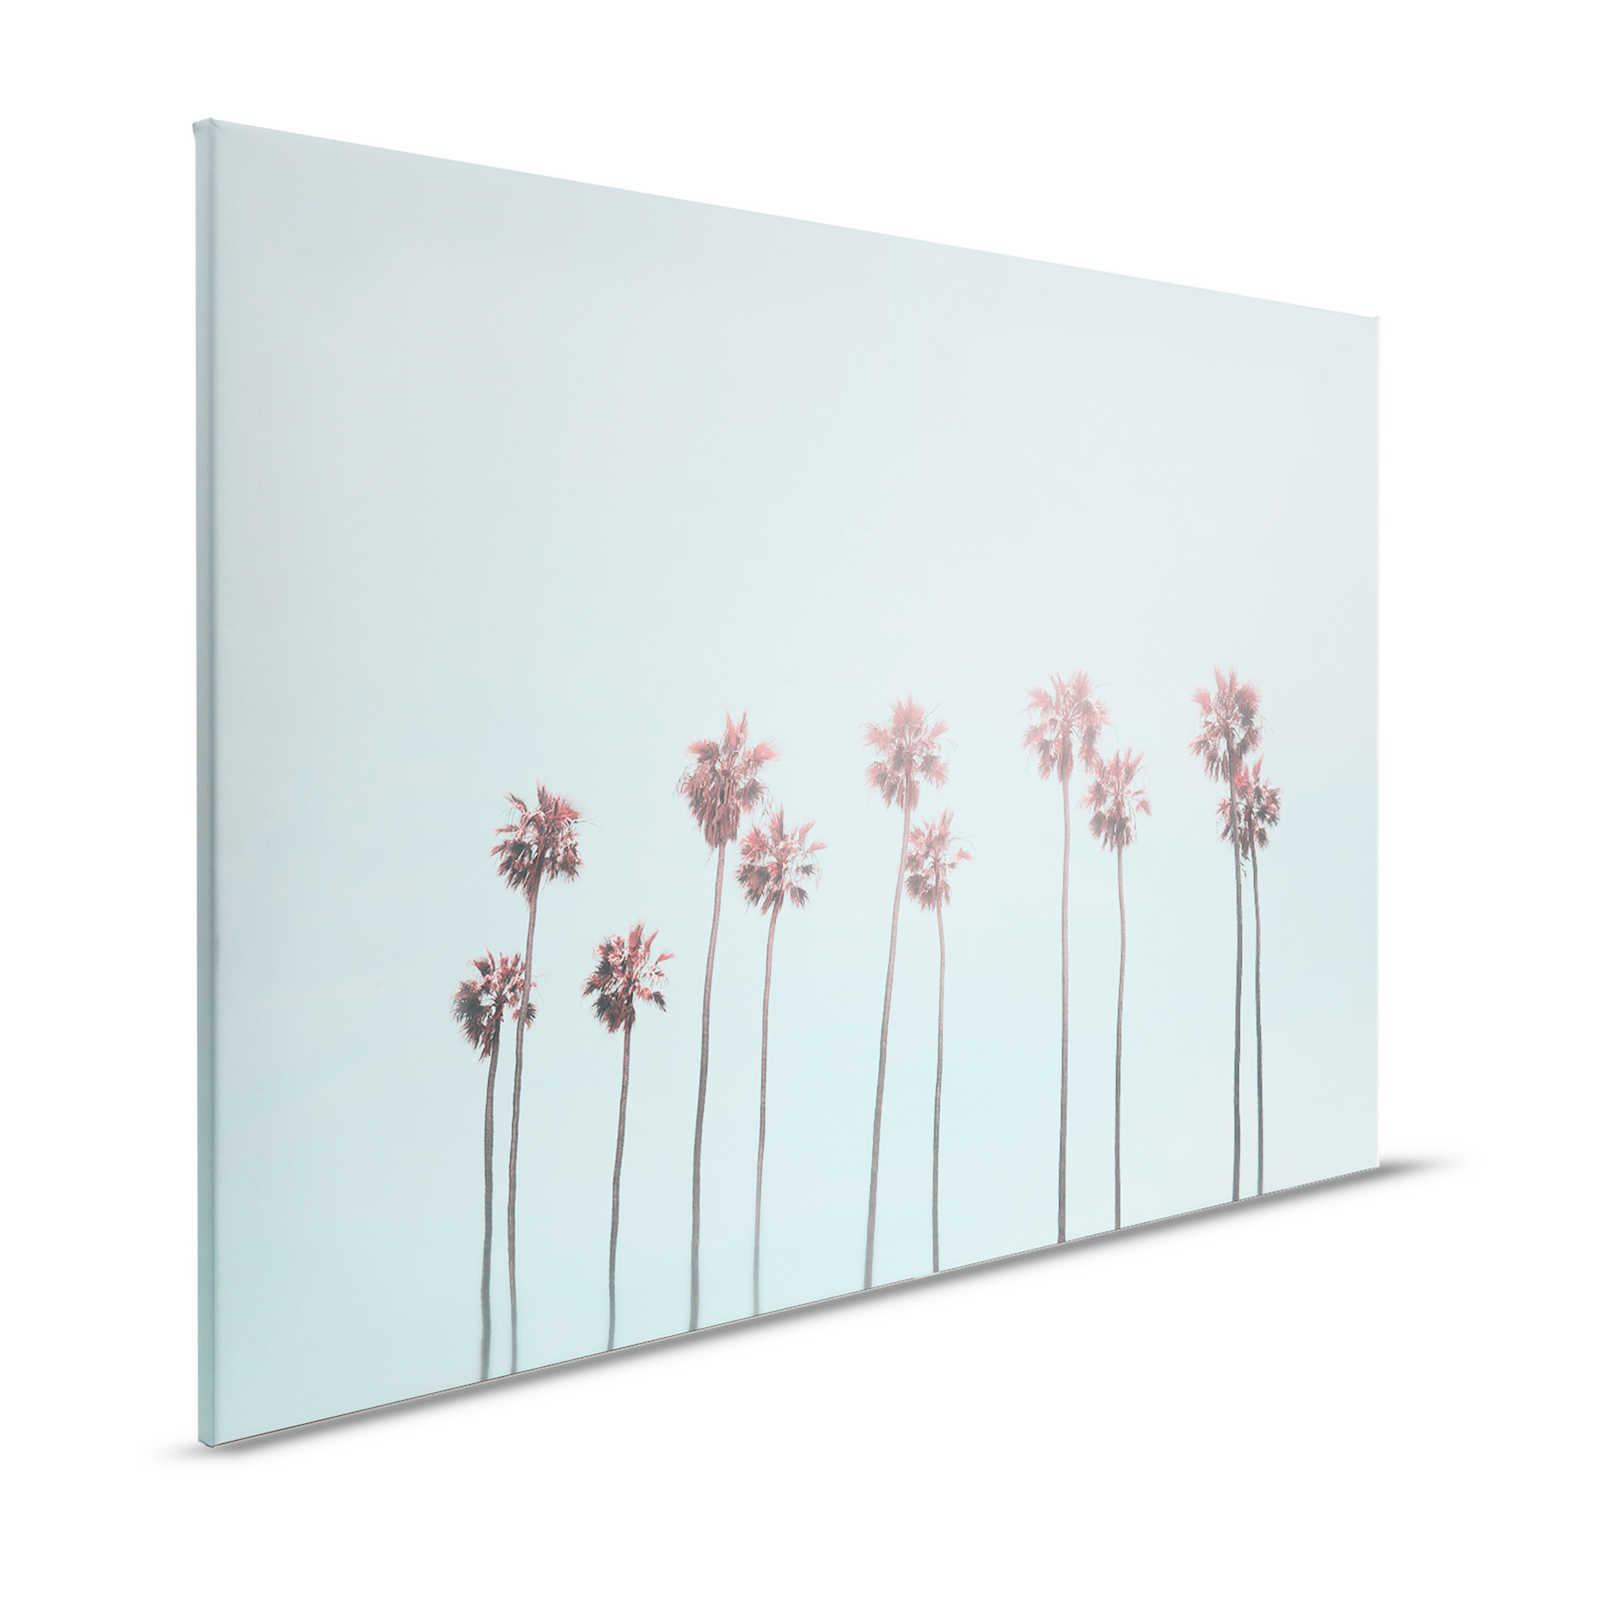 Tableau toile Palmiers & ciel pour une ambiance de plage en turquoise & rose - 1,20 m x 0,80 m
